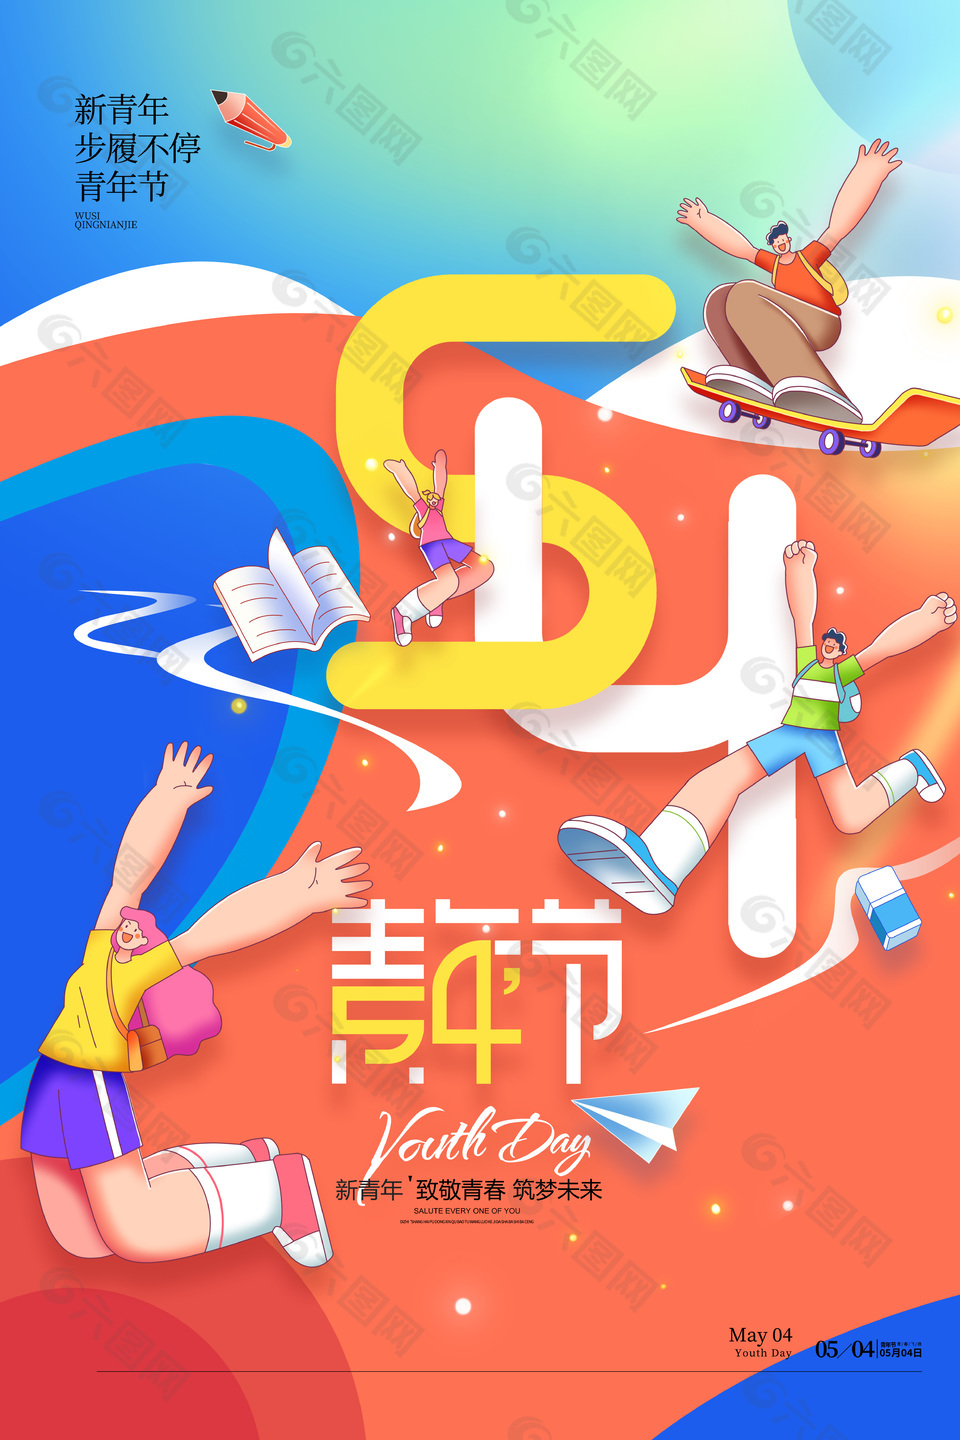 扁平风54青年节节日宣传海报下载